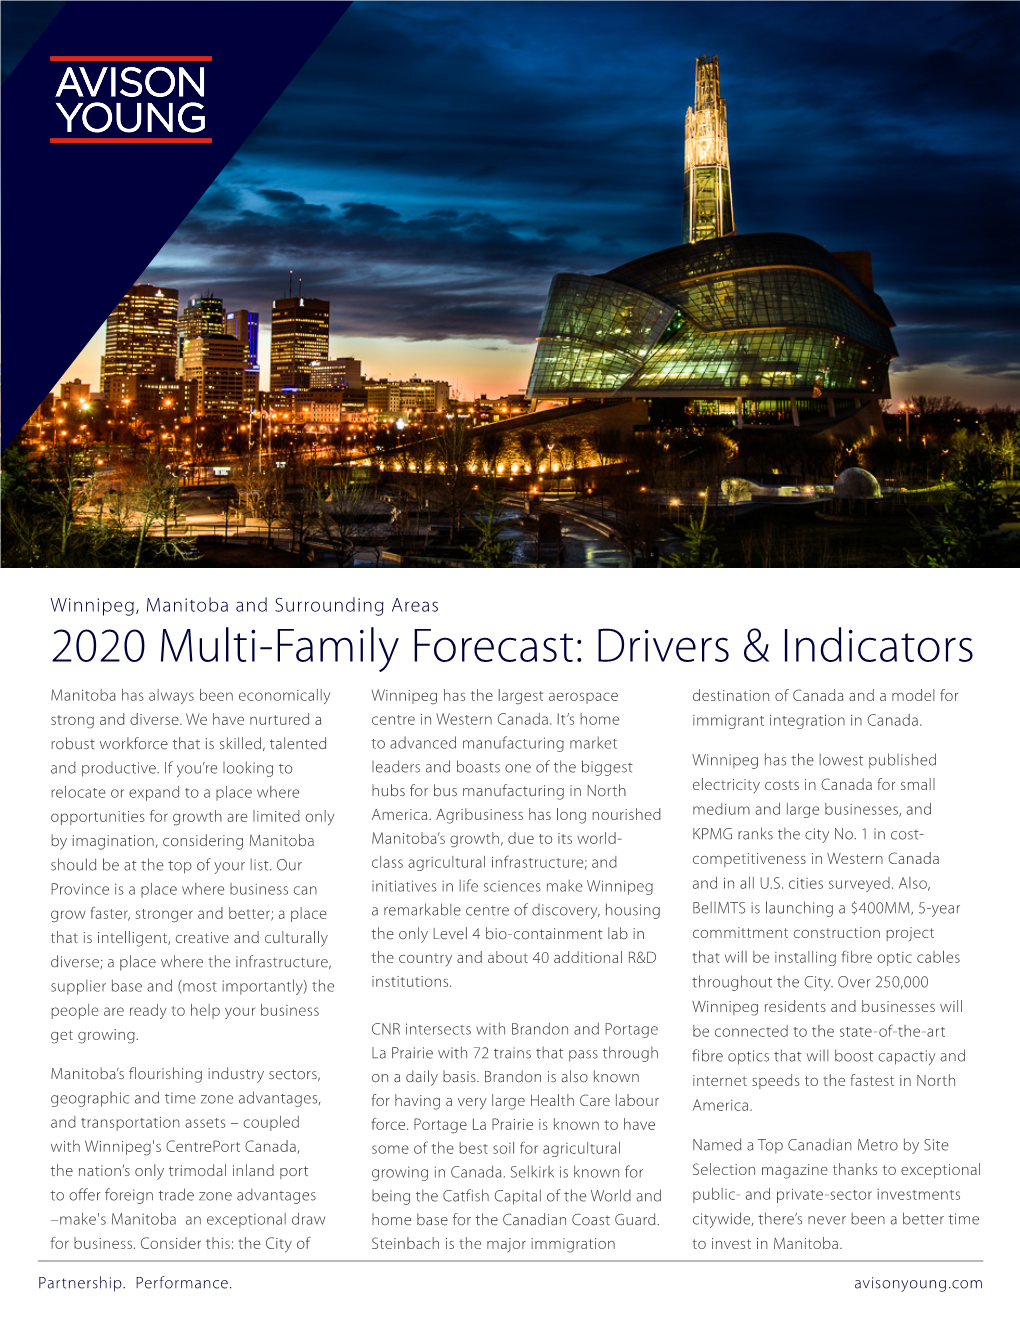 2020 Multi-Family Forecast for Winnipeg